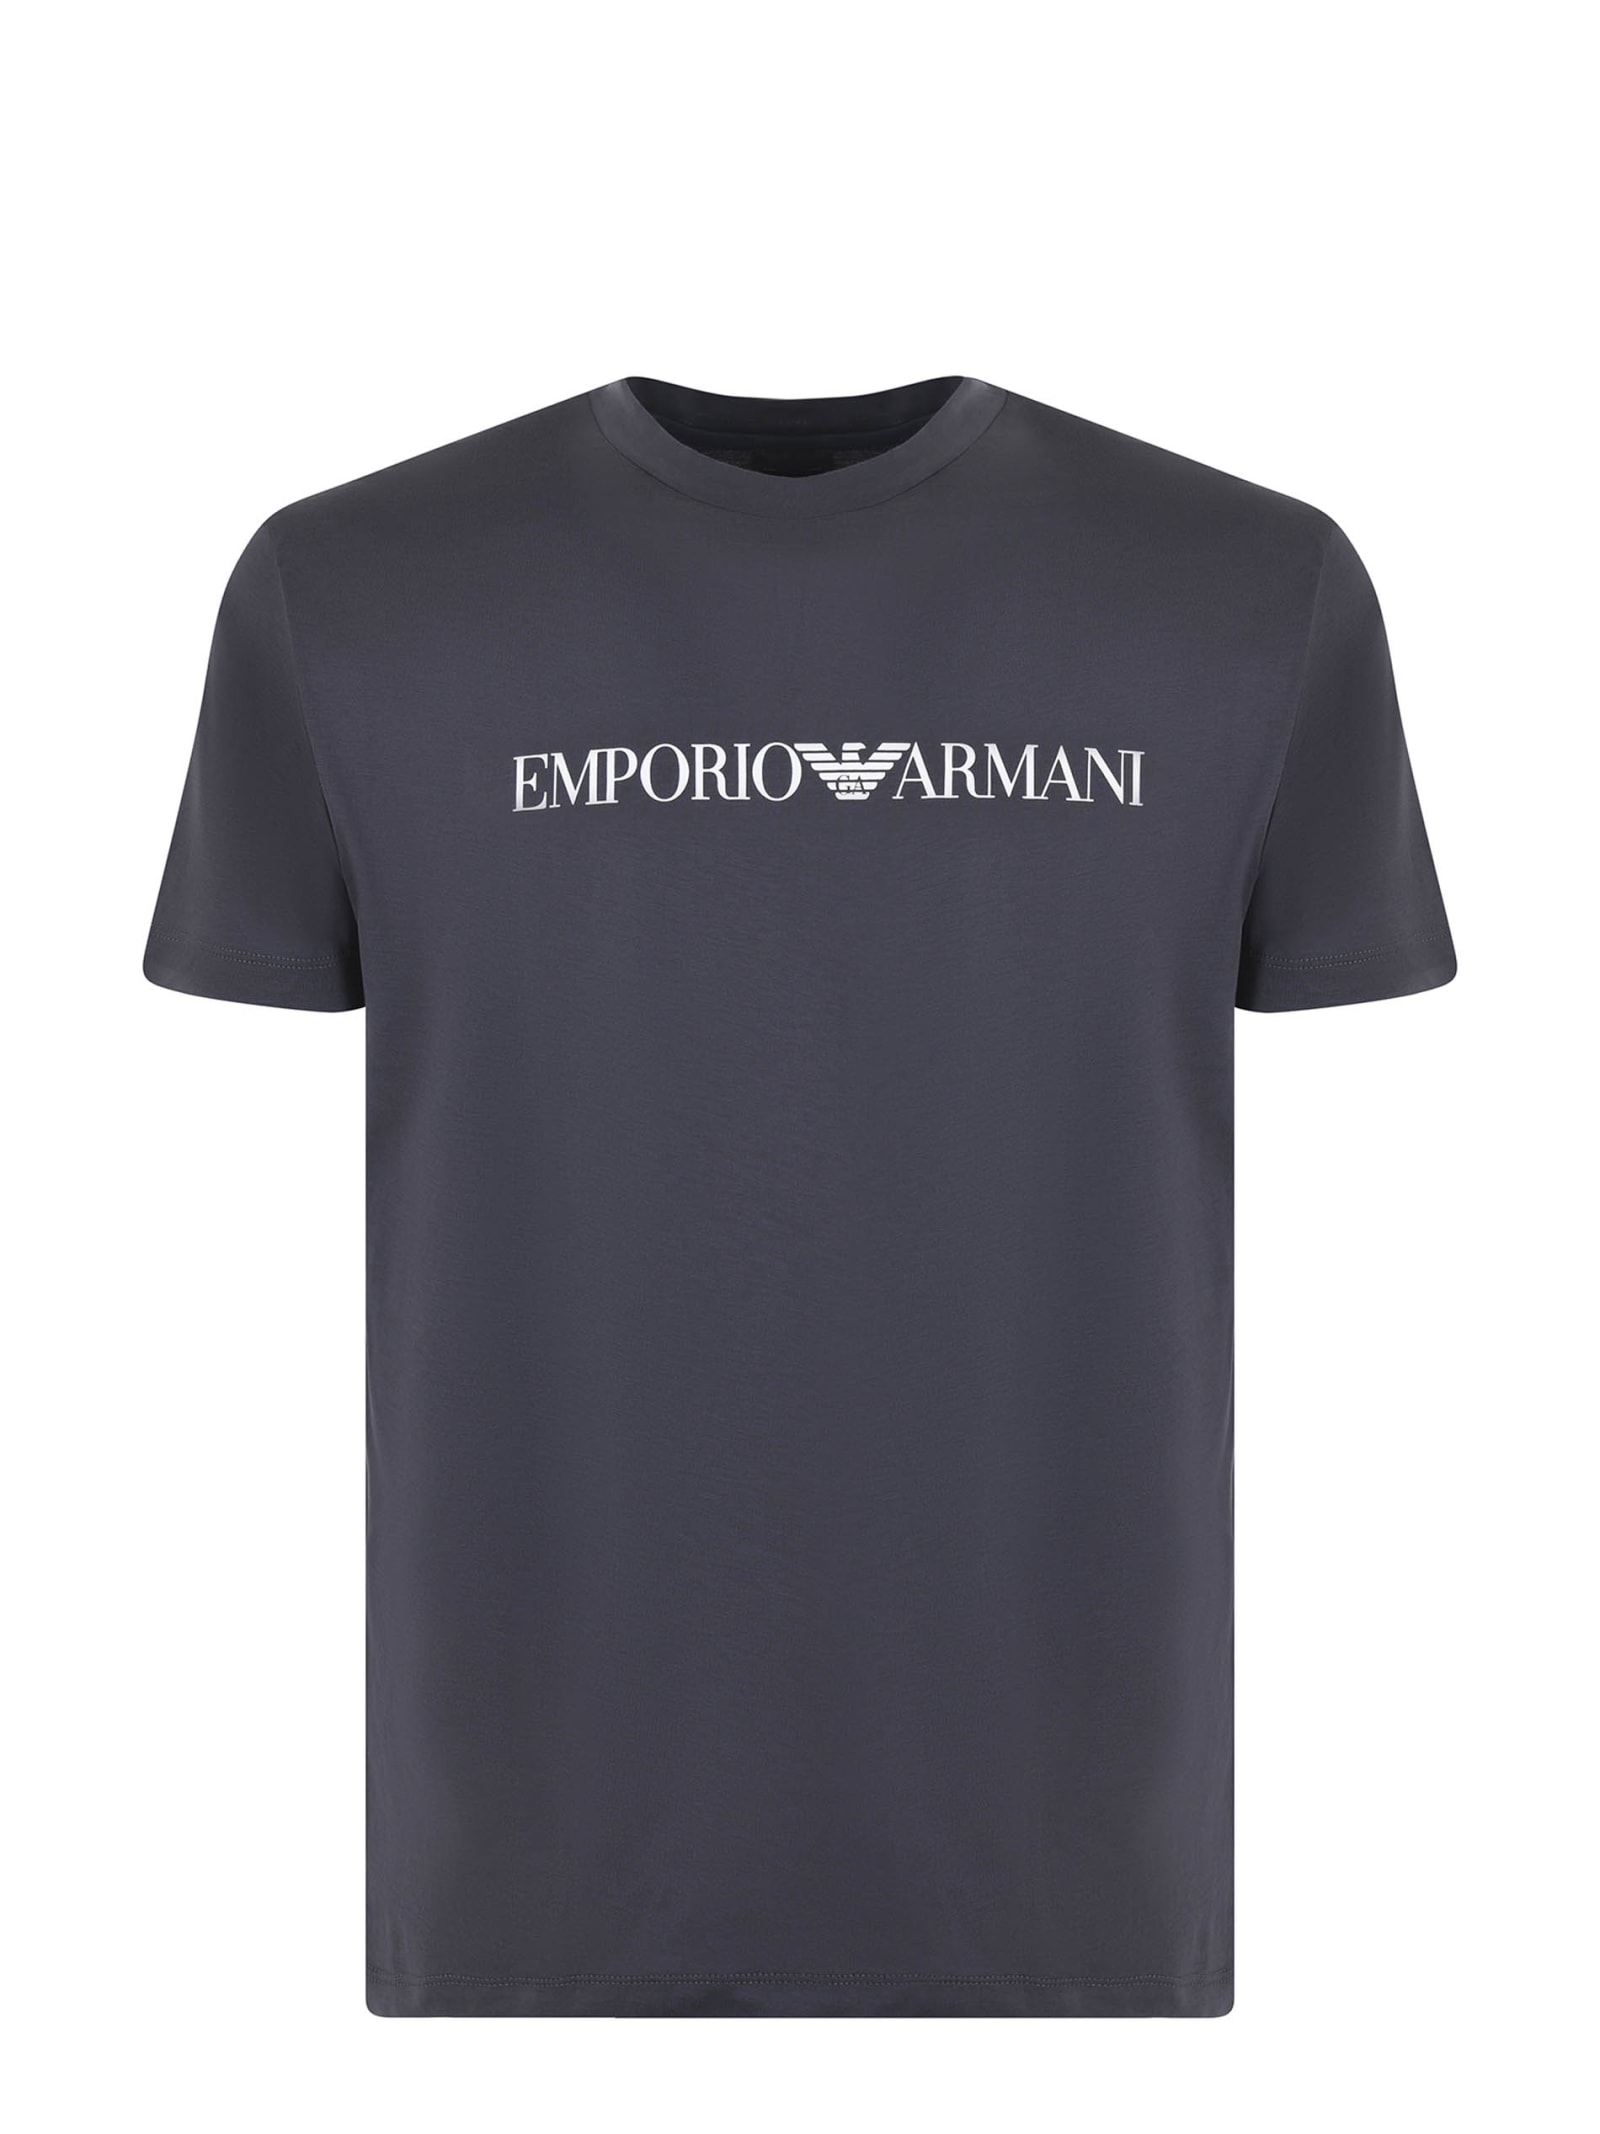 Emporio Armani T-shirt Emporio Armani In Cotone